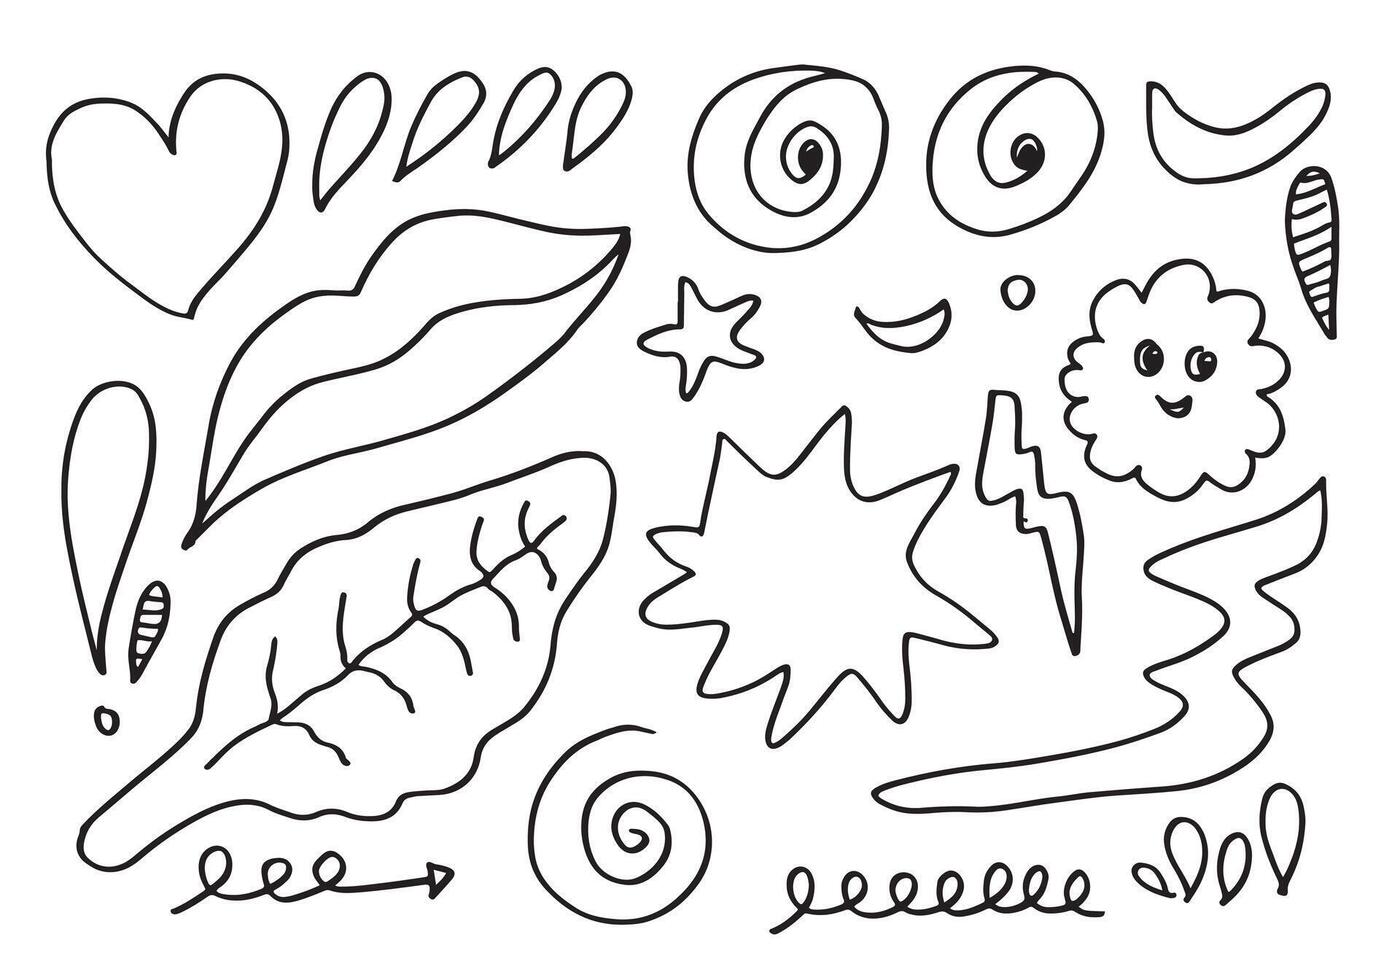 Hand drawn doodle design elements, black on white background. mouth, heart, leaf, eye, star, line. doodle sketch design elements. vector